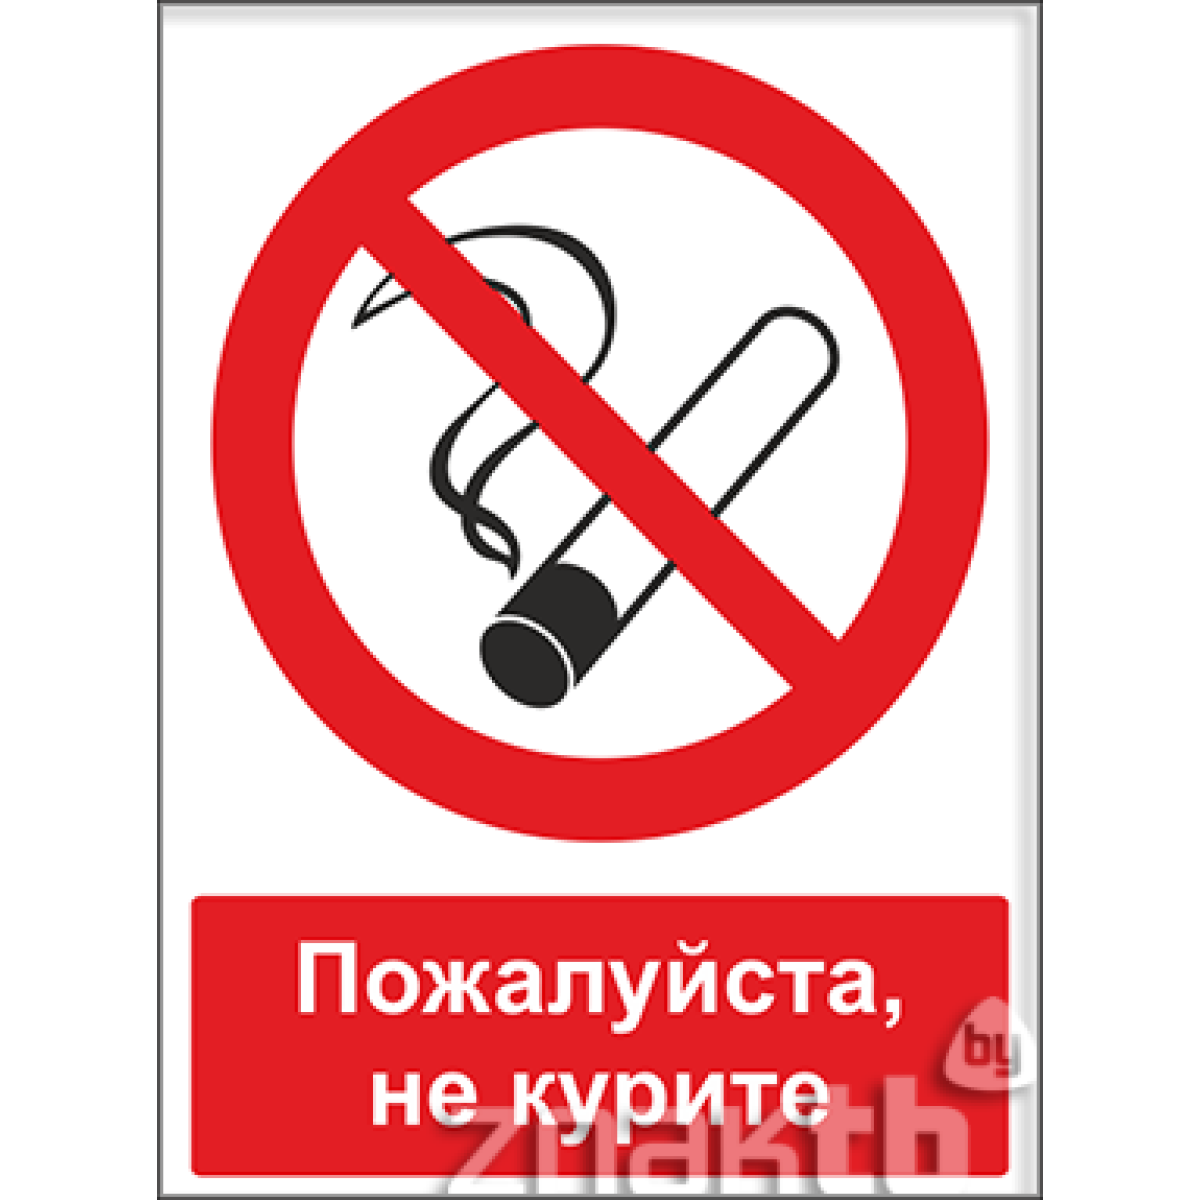 Знак Пожалуйста, не курите (с поясняющей надписью)